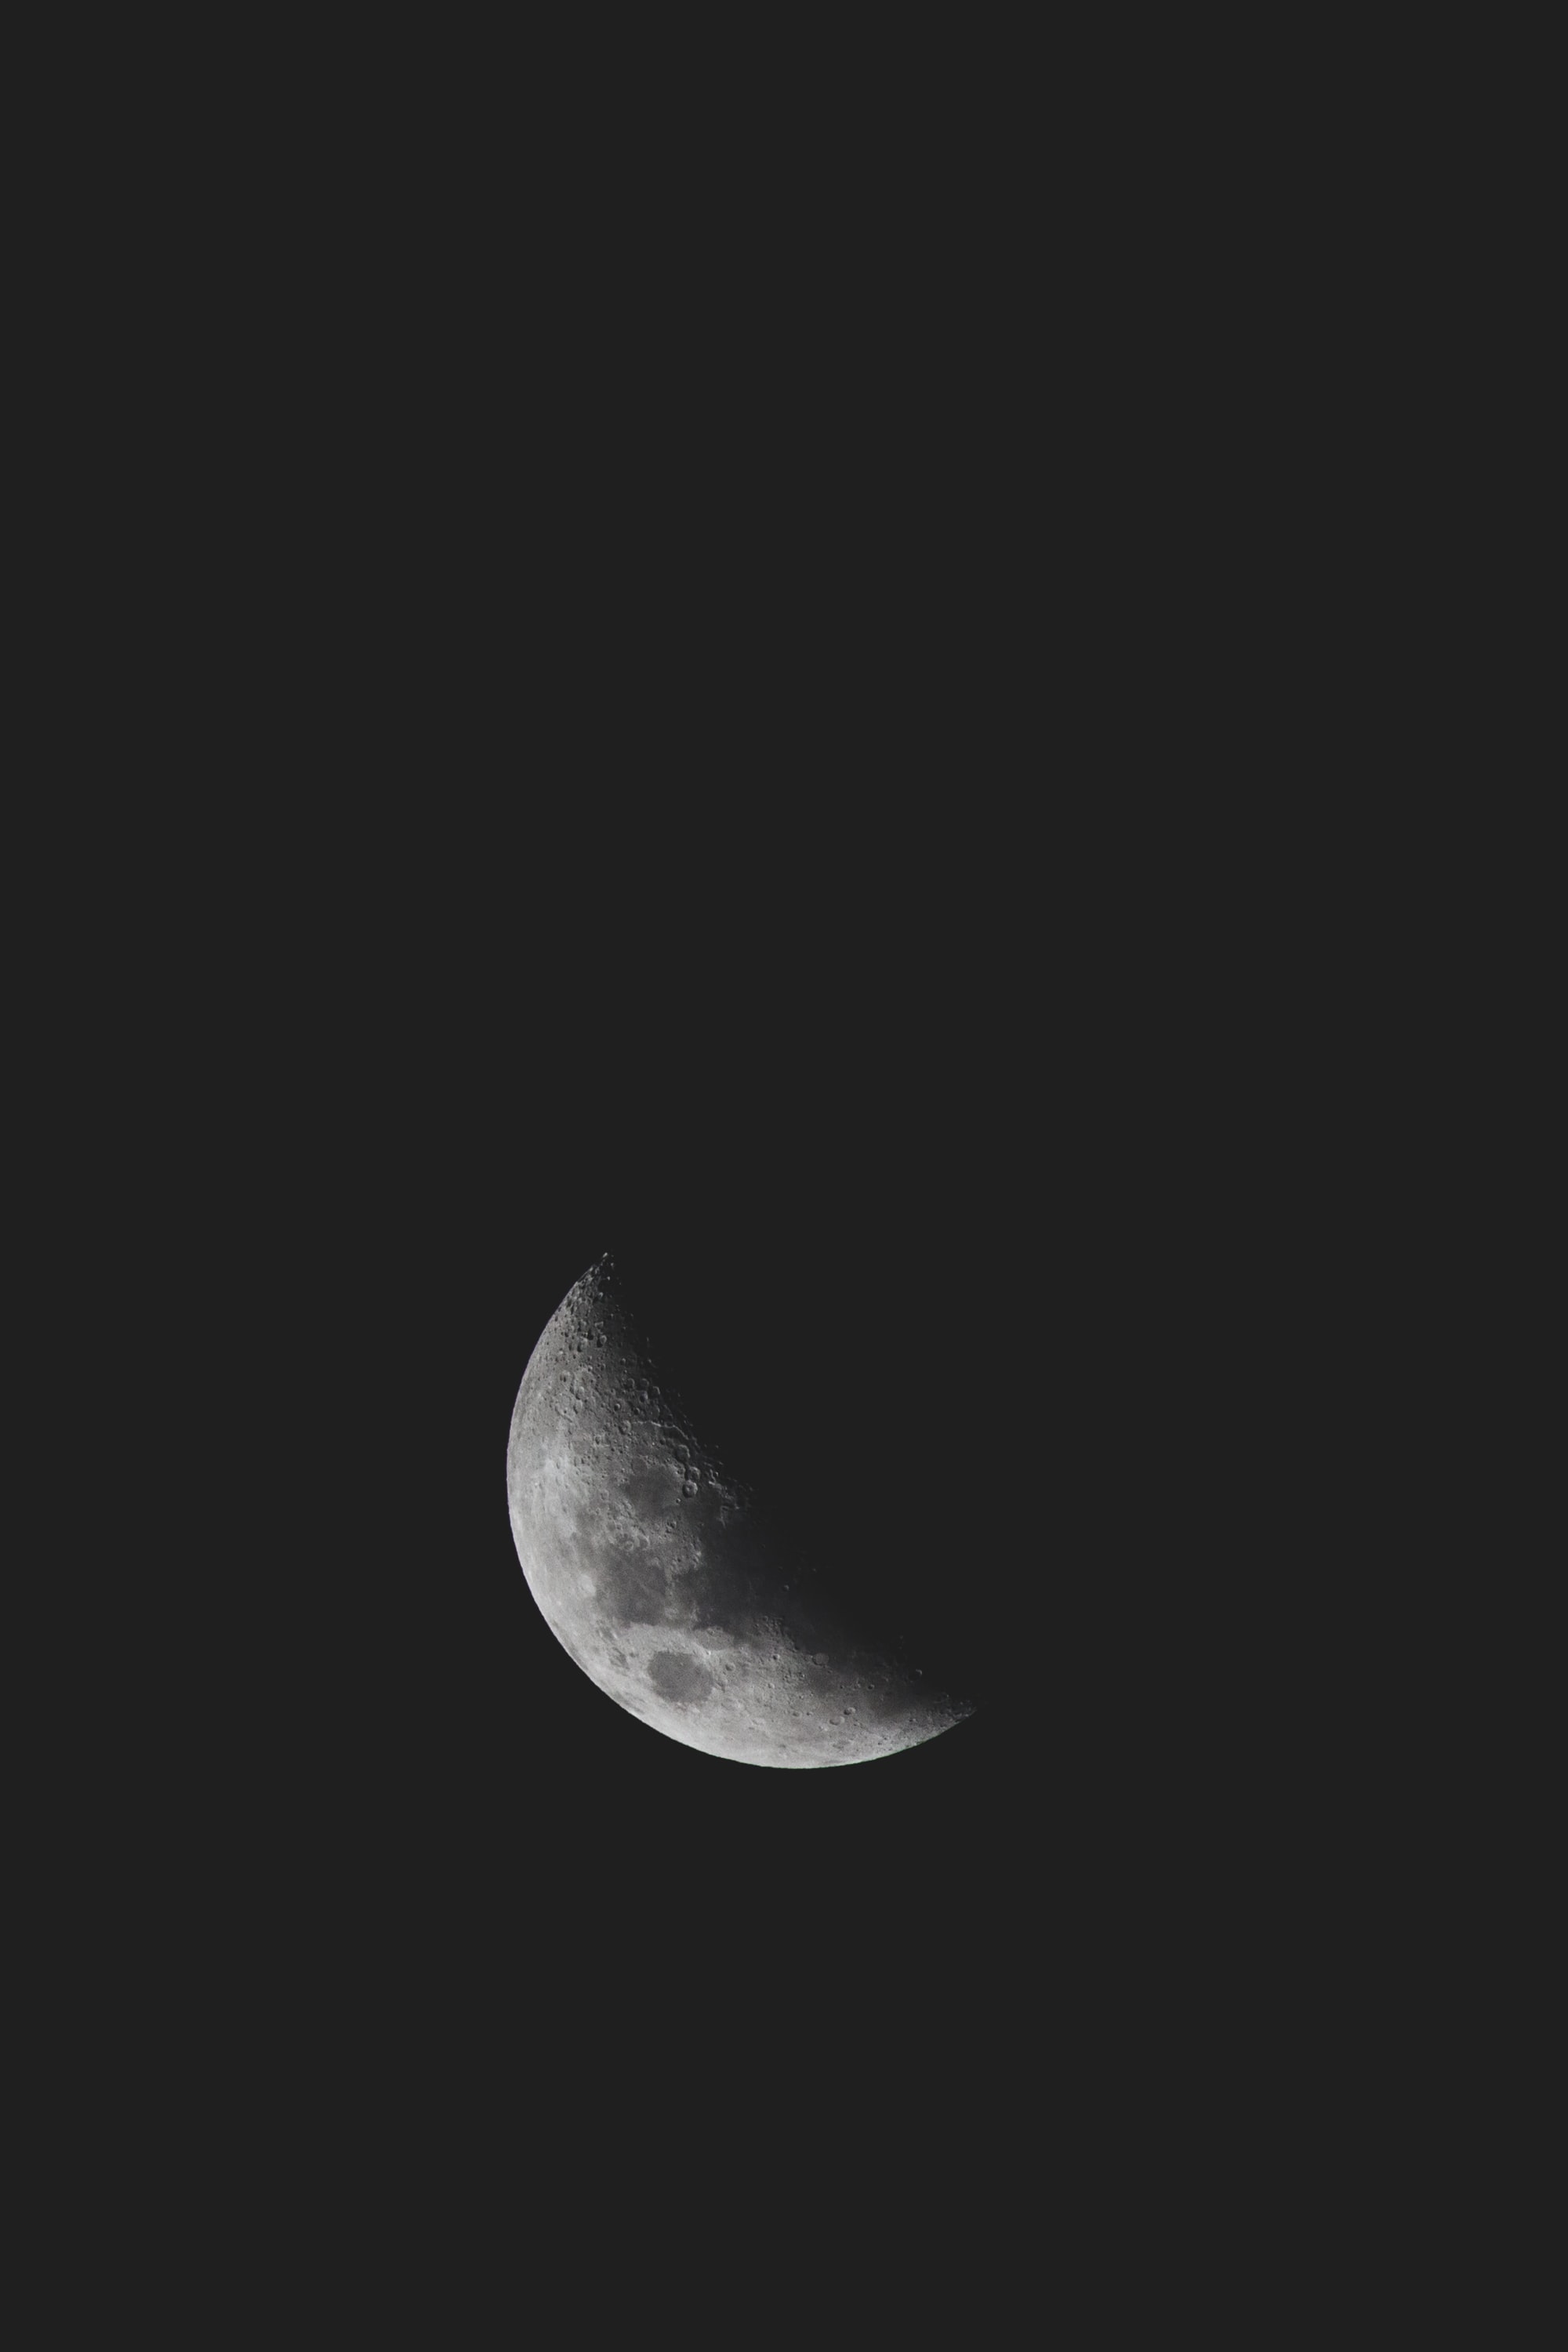 minimalism, craters, moon, black, dark, bw, chb